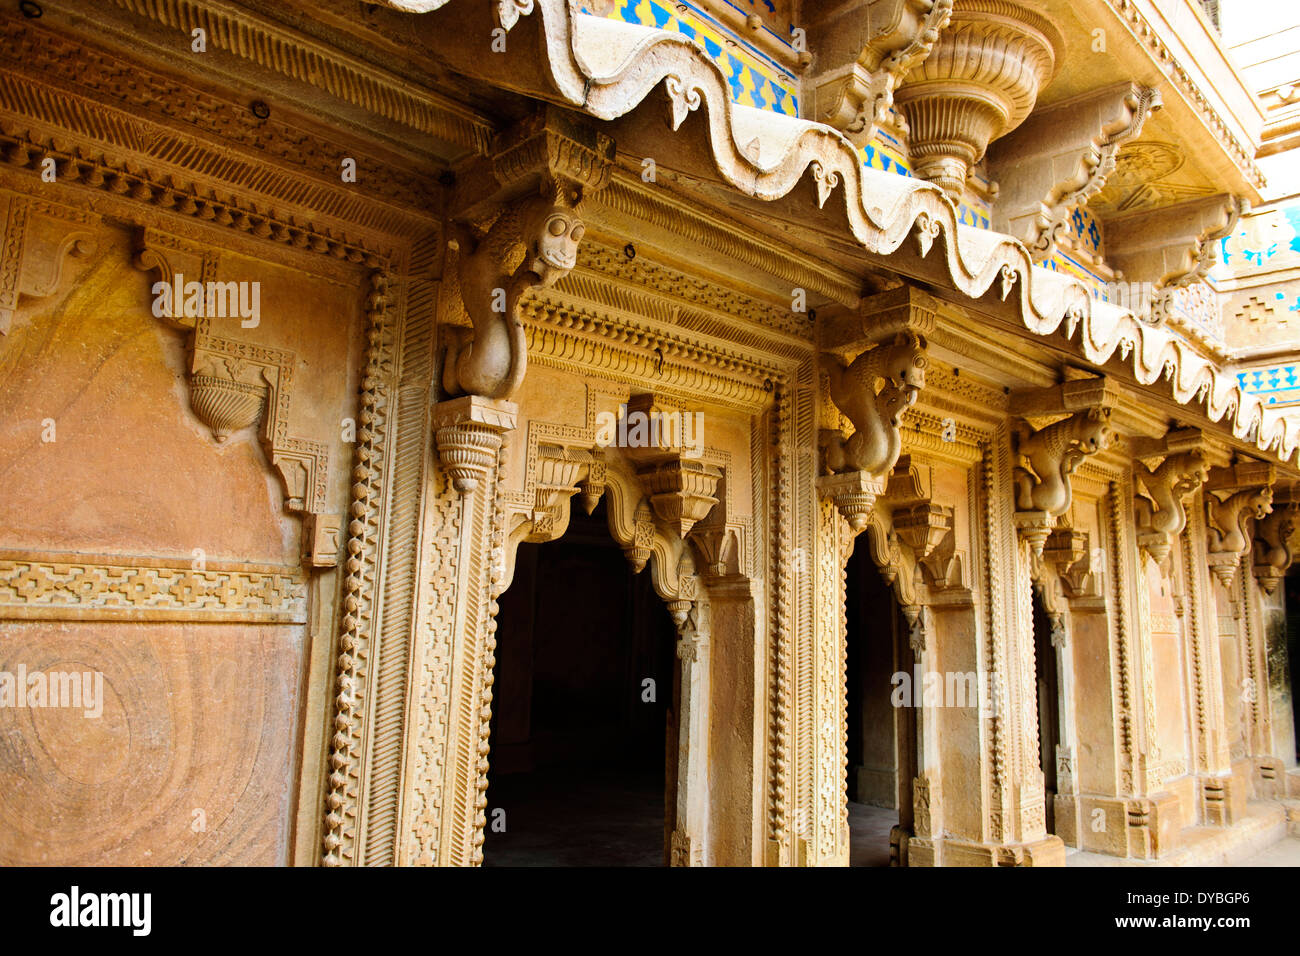 Fort Man Mandir Palace,1486,extérieur,cour intérieure, la pierre des piliers sculptés en treillis,Gwalior Madhya Pradesh, Inde centrale Banque D'Images